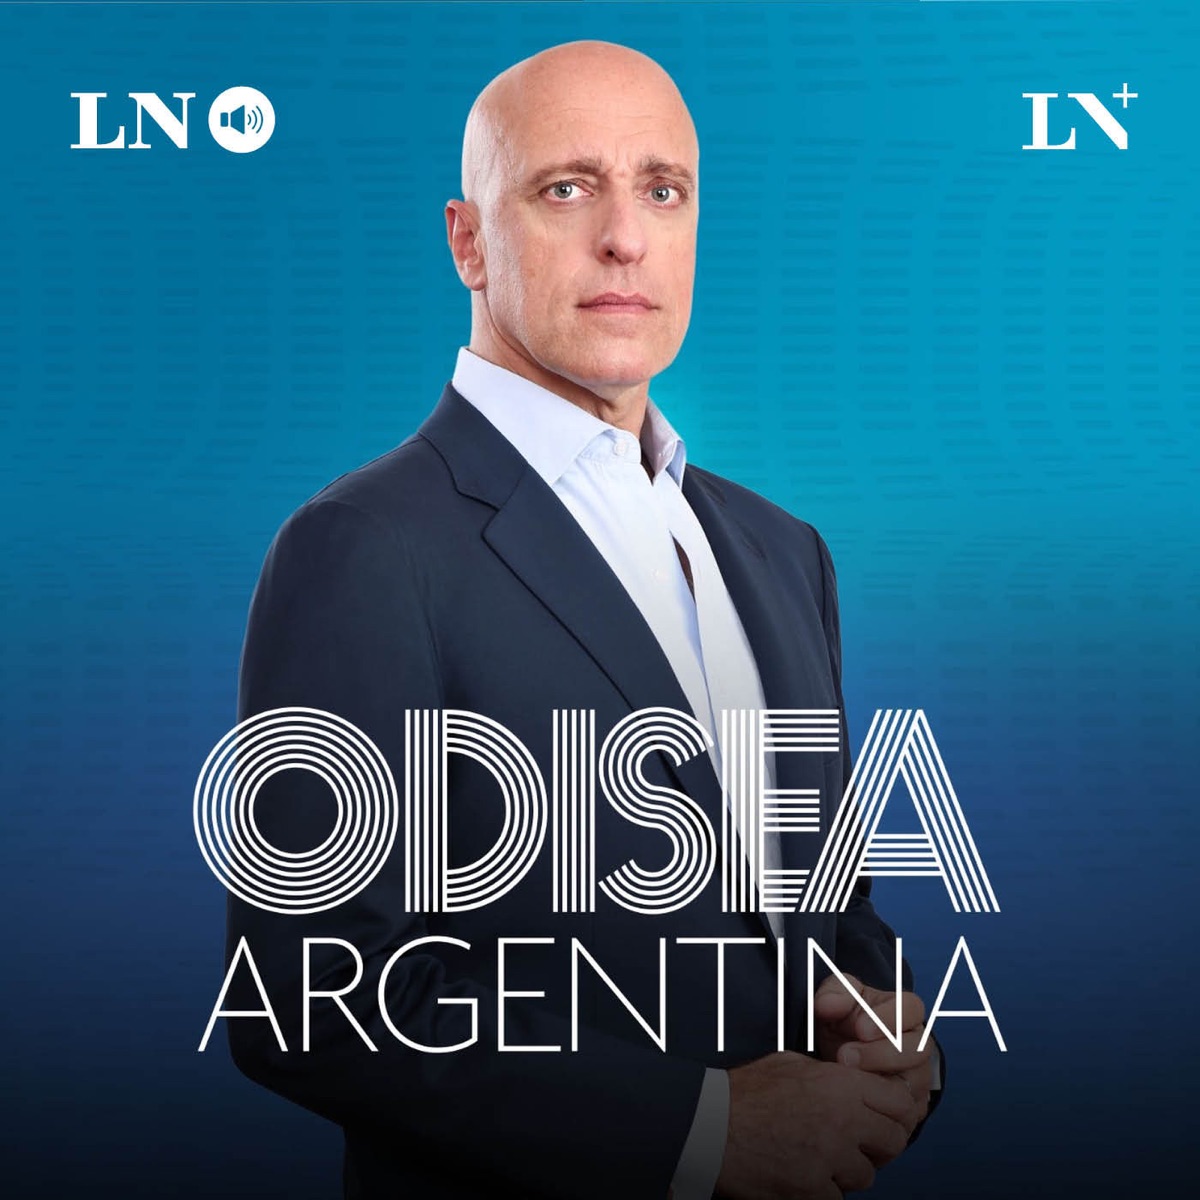 Carlos Pagni en Odisea Argentina